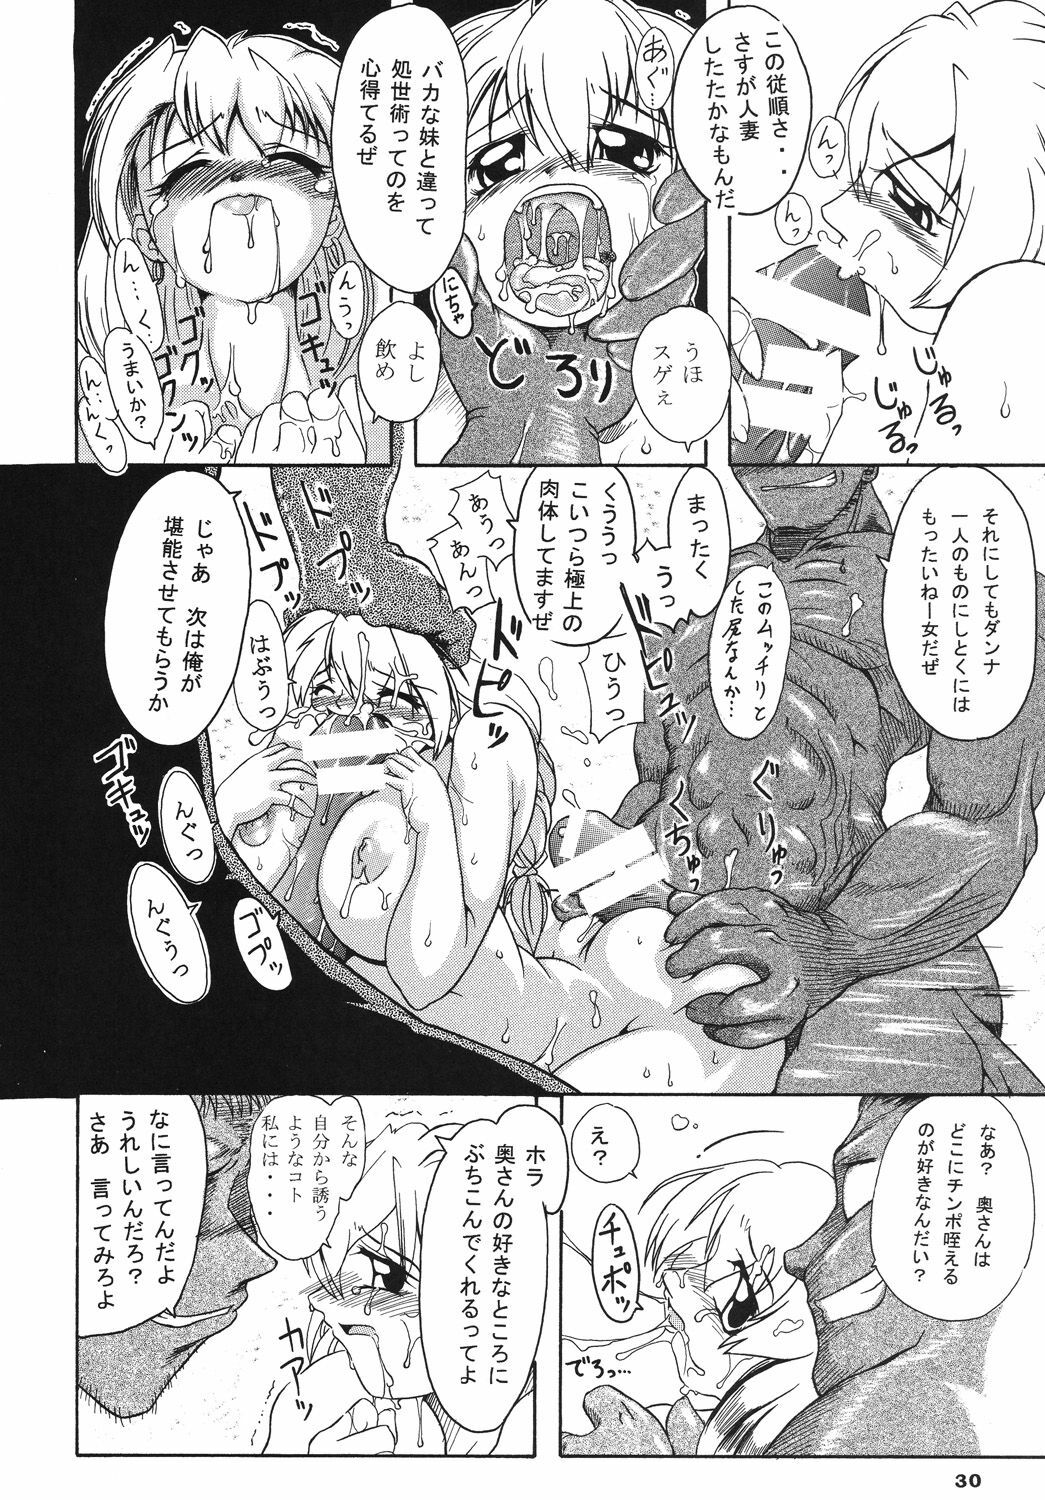 [Furuya (TAKE)] Seisenshi no Matsuro (SoulCalibur) [2005-01-18] page 29 full